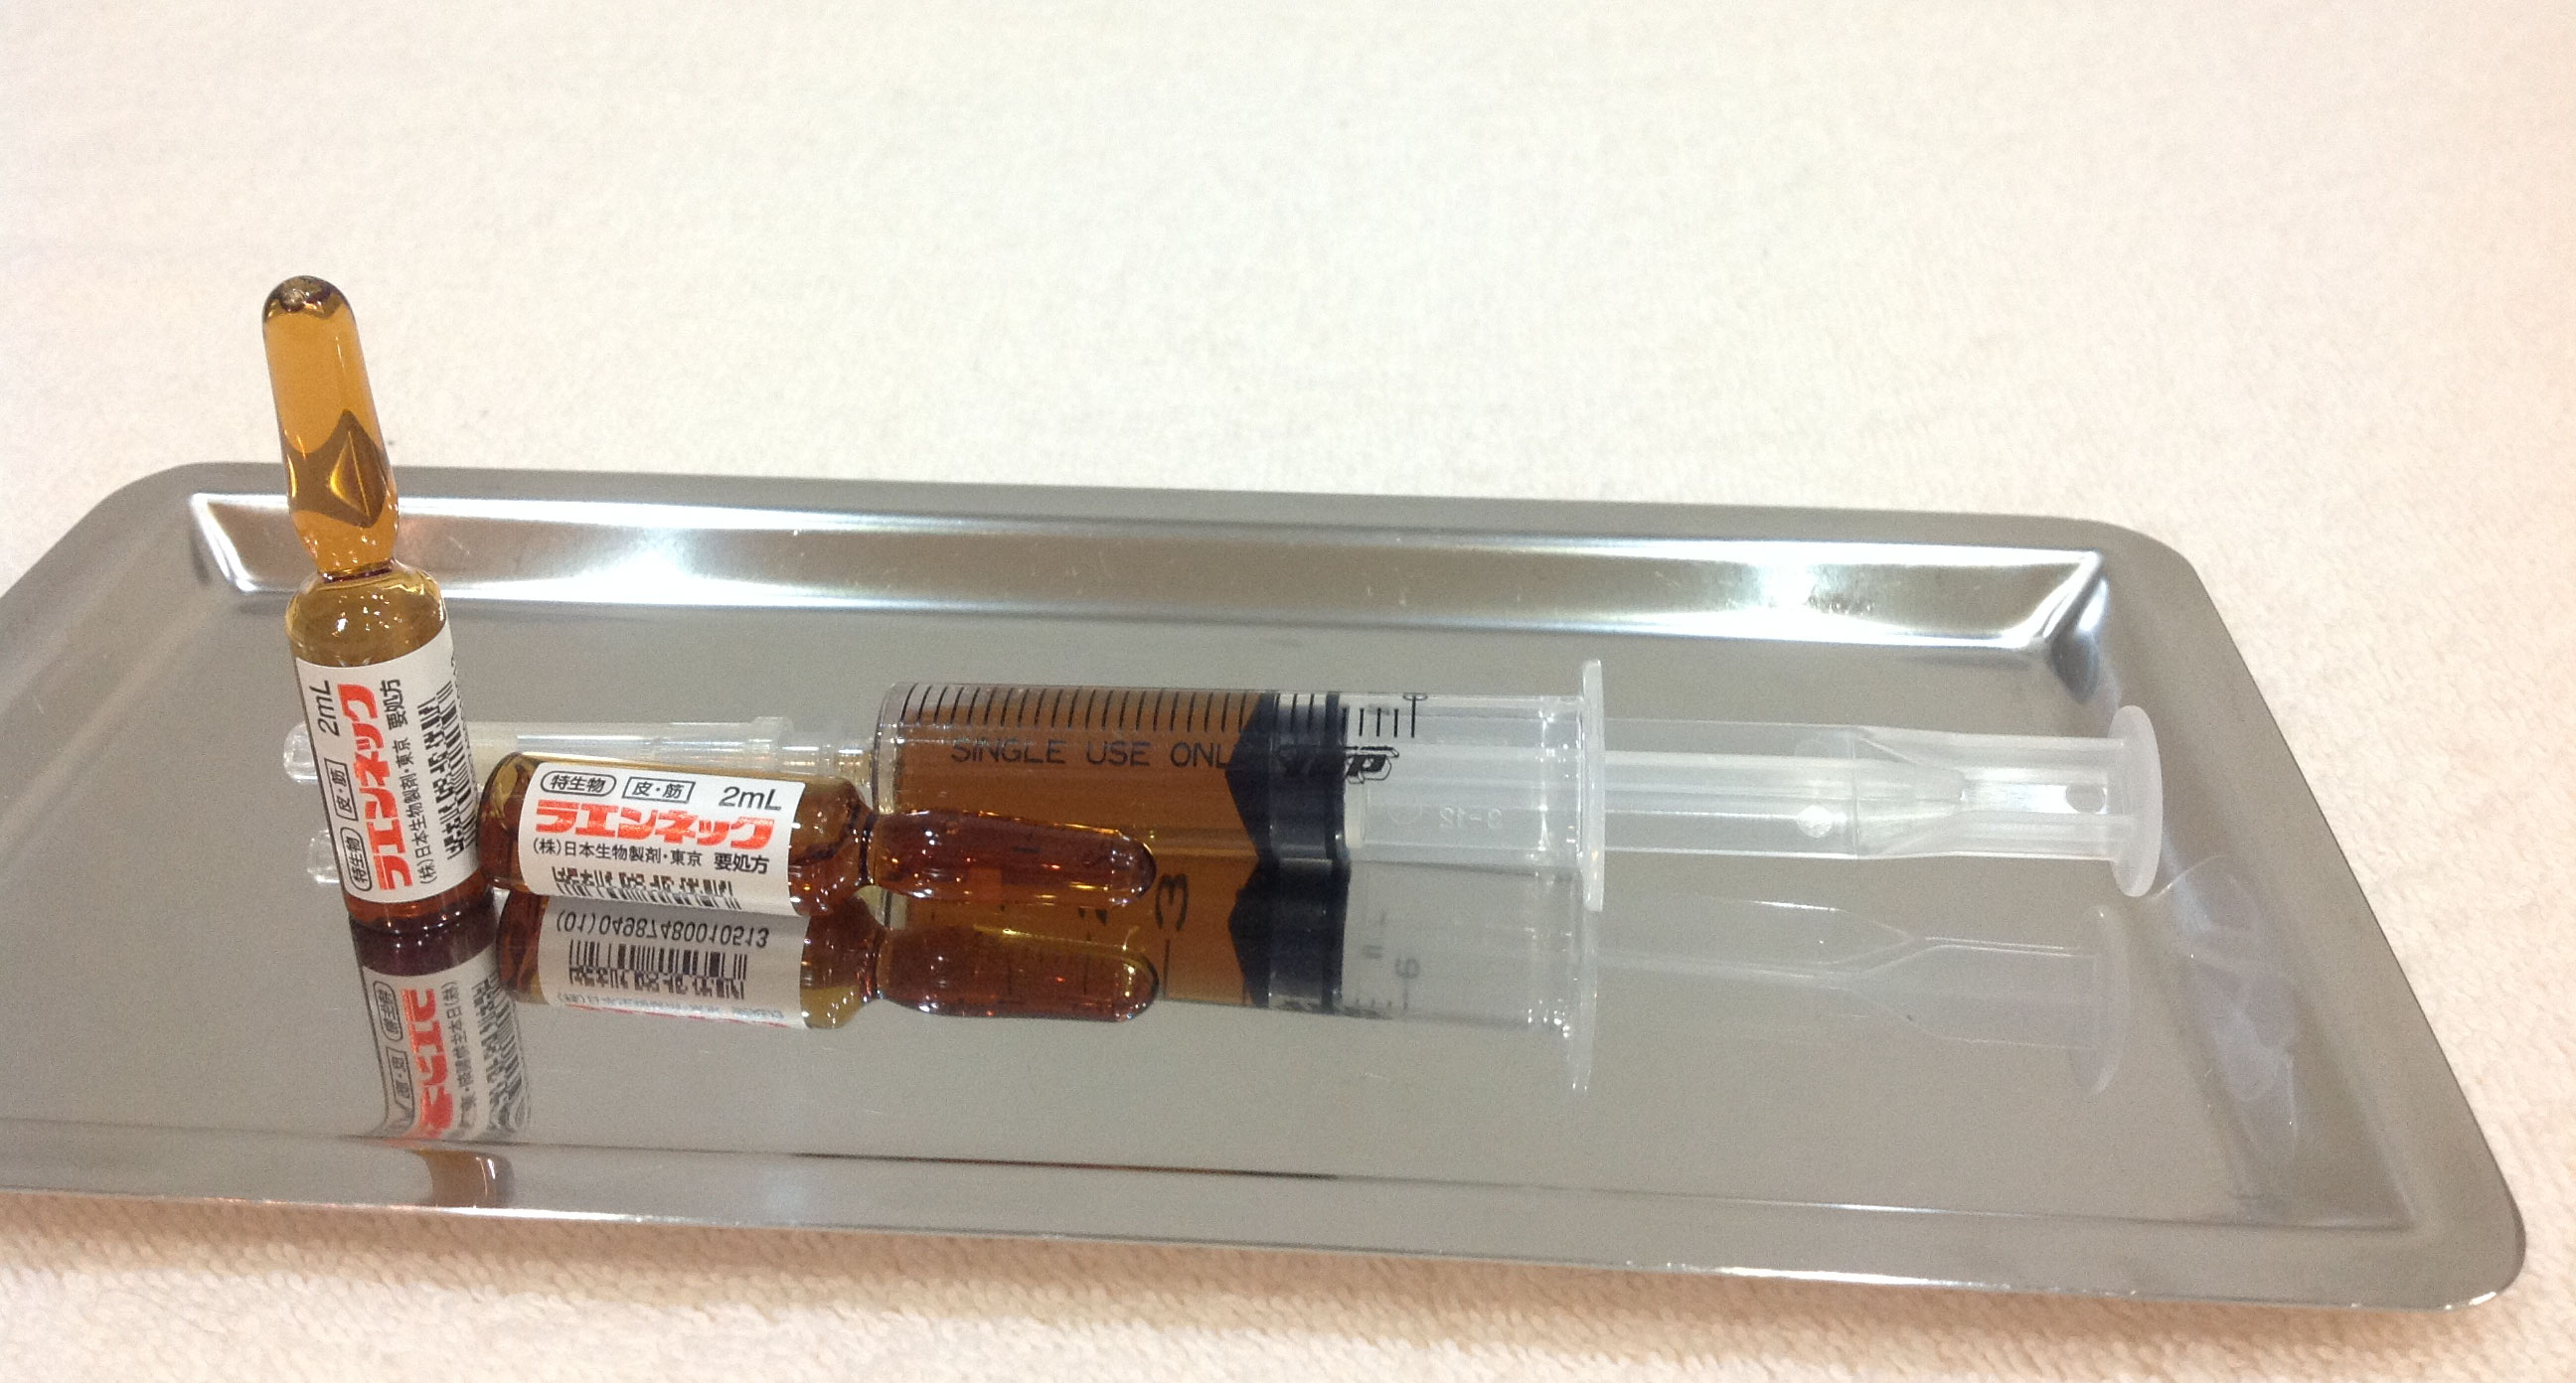 プラセンタ製剤である（株）日本生物のラエンネックのアンプルと注射器の画像です。アンプルは茶褐色で白地のラベルにに赤でラエンネックと書かれてます。注射器は5ccでラエンネック2アンプル4ccの褐色の薬剤で満たされてます。